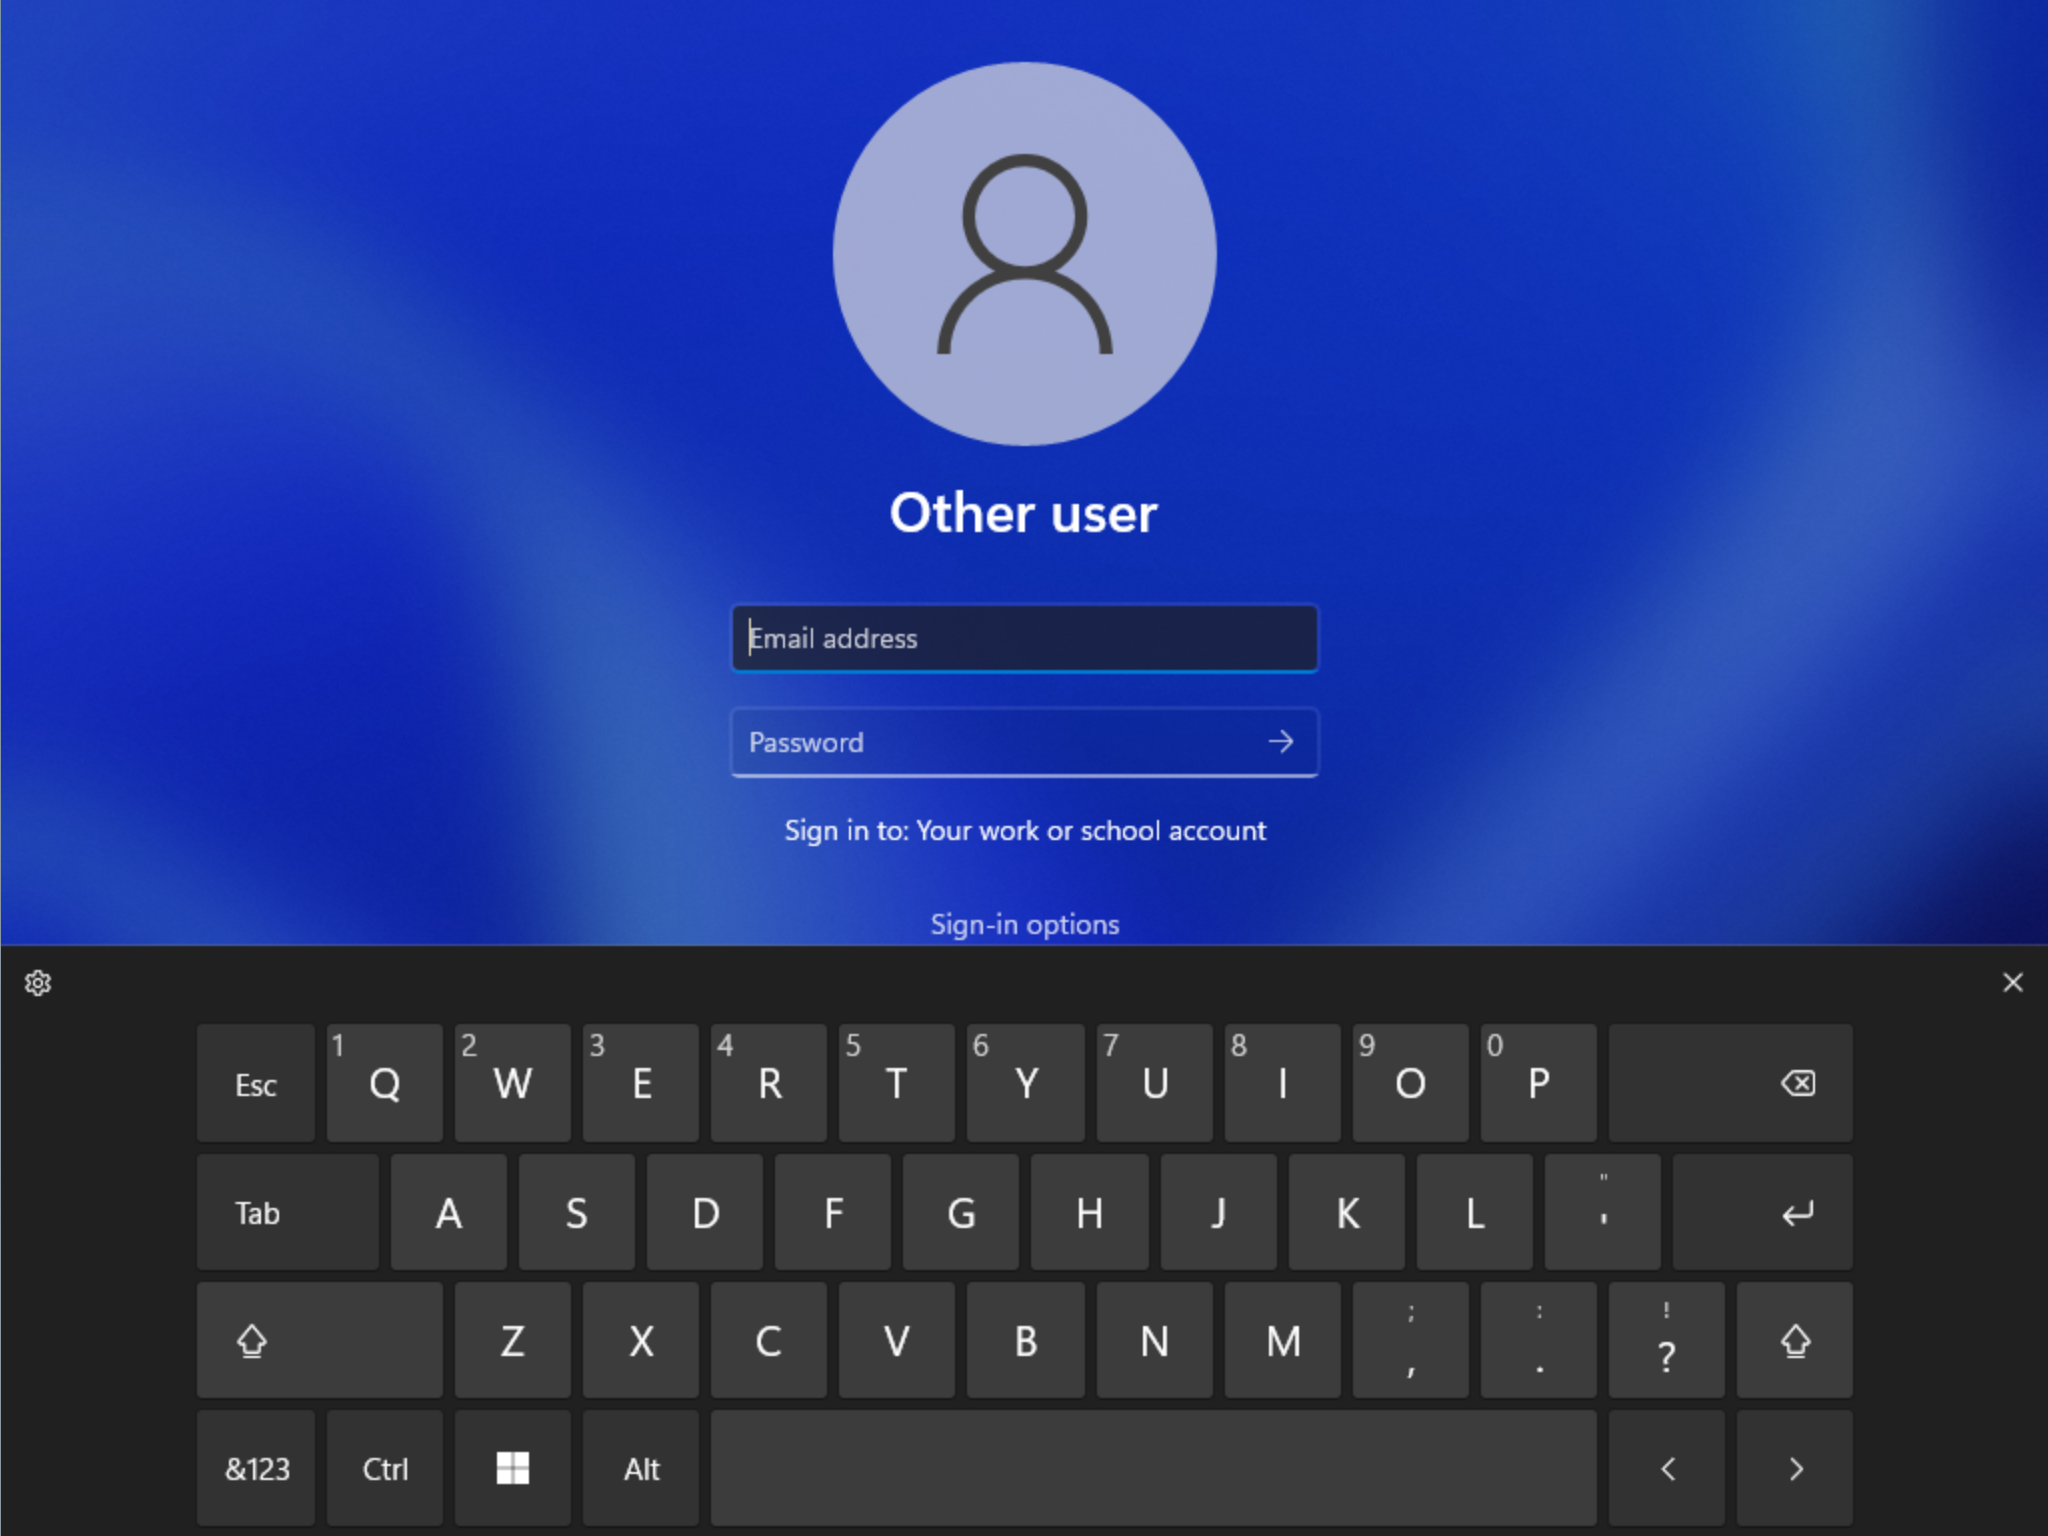 Das aktualisierte Design der Touch-Tastatur, wie es vom Sperrbildschirm aus zu sehen ist.